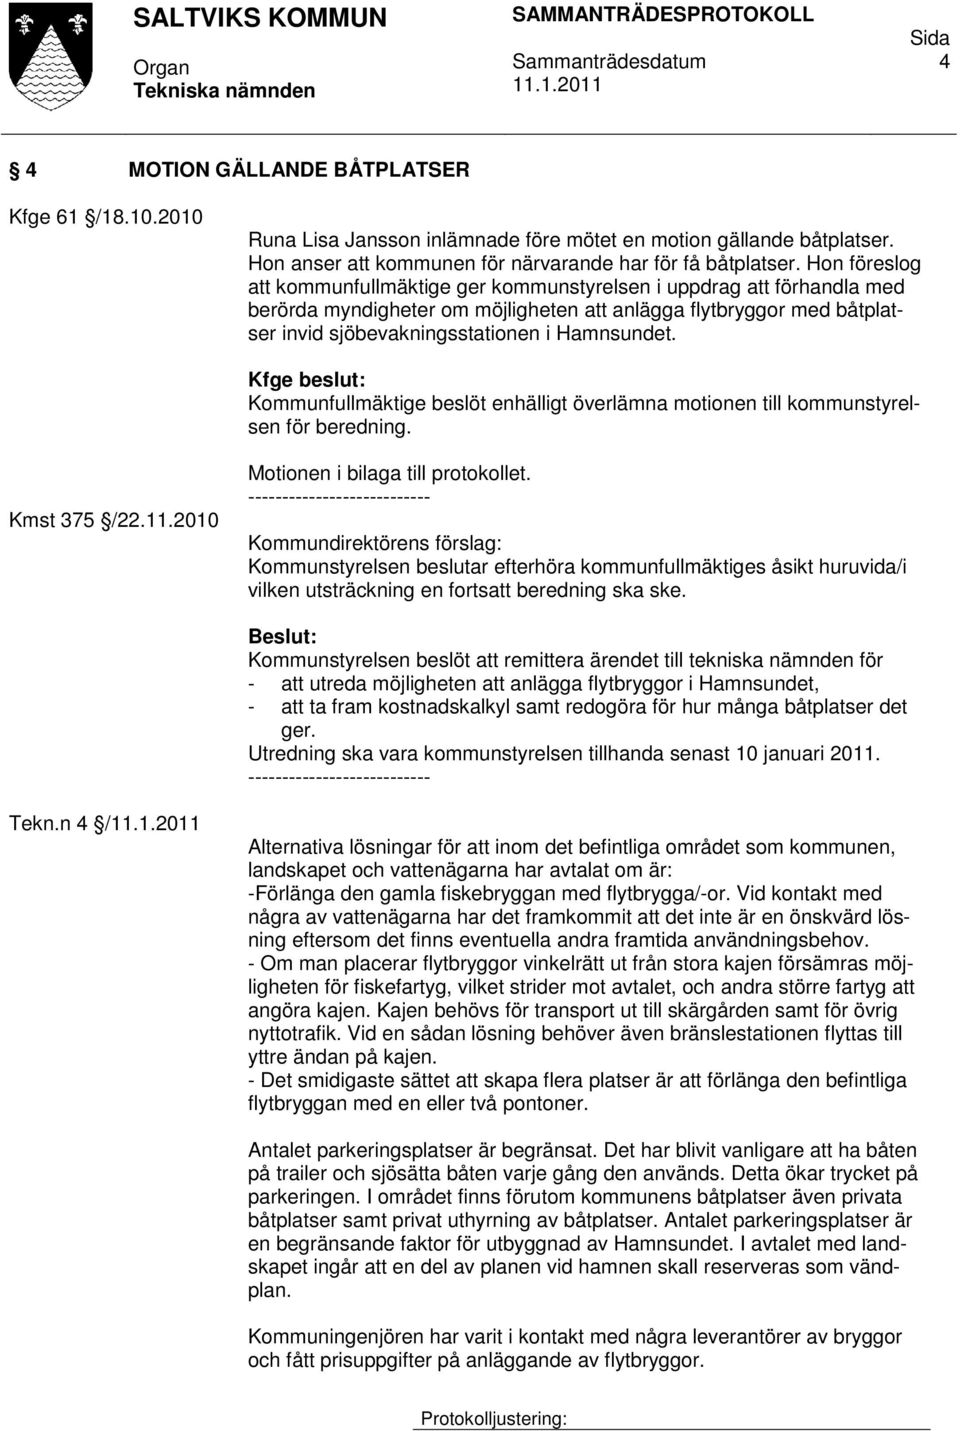 Kfge beslut: Kommunfullmäktige beslöt enhälligt överlämna motionen till kommunstyrelsen för beredning. Kmst 375 /22.11.2010 Motionen i bilaga till protokollet.